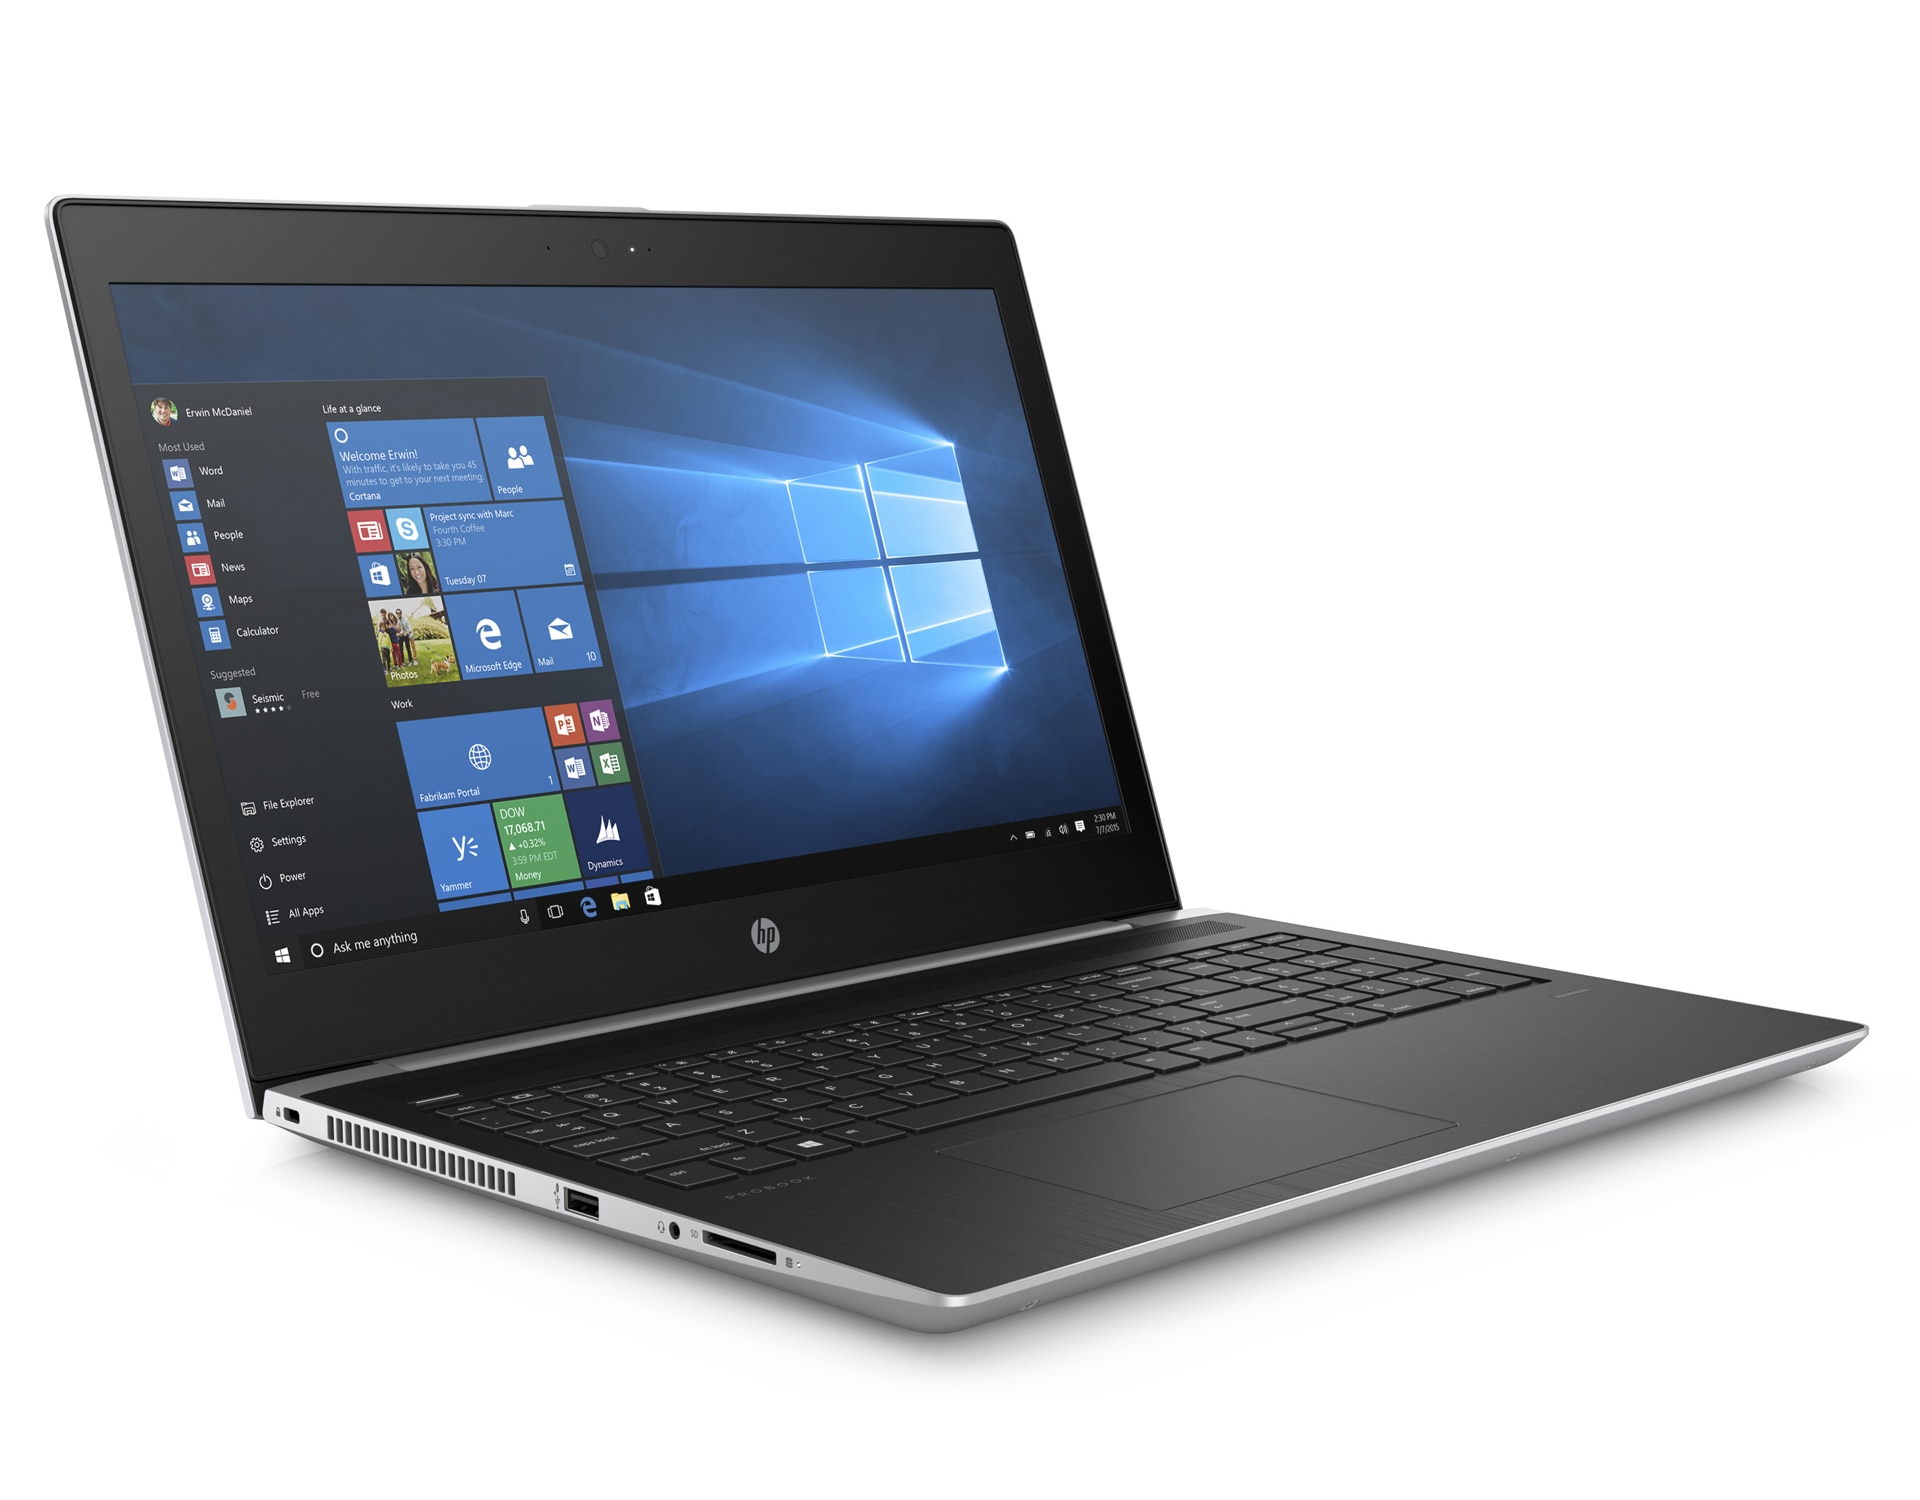 【大画面17.3インチ】 【高スペック】 HP ProBook 470 G5 第8世代 Core i7 7500U/2.70GHz 16GB SSD120GB M.2 Windows10 64bit WPSOffice 17.3インチ フルHD カメラ テンキー 無線LAN パソコン ノートパソコン PC Notebook